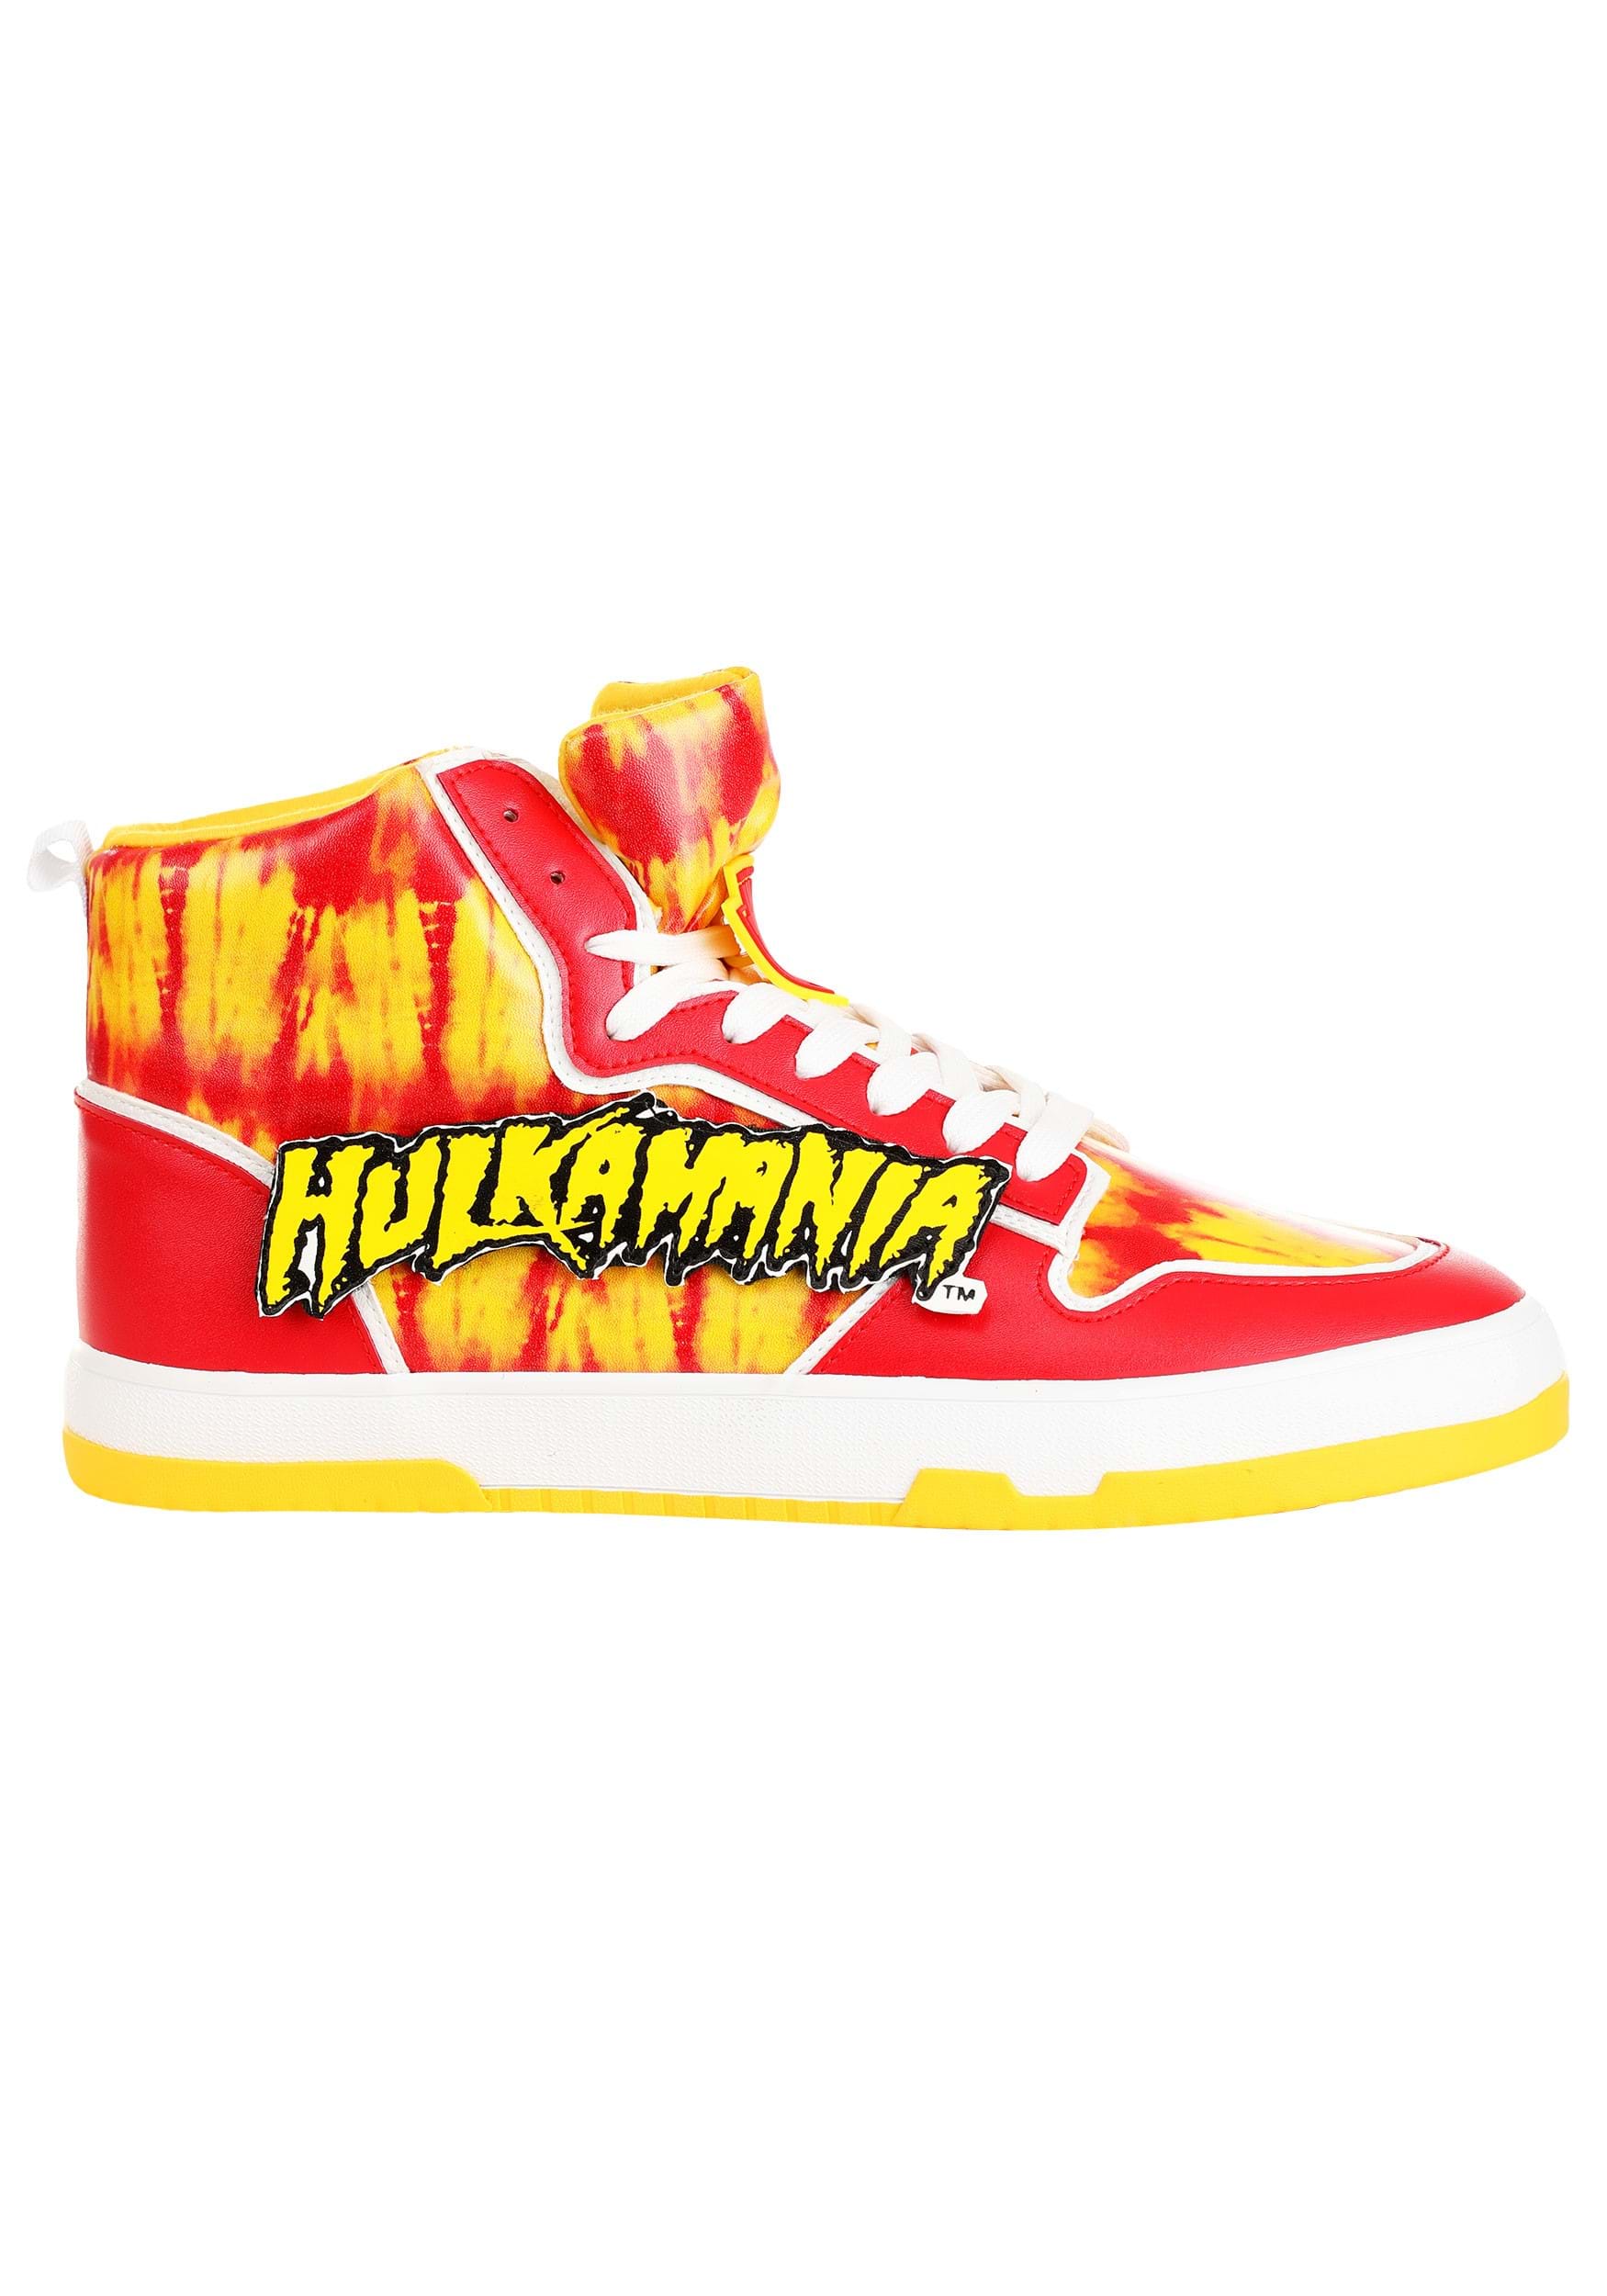 Hulk Hogan Hulkamania Shoes For Men